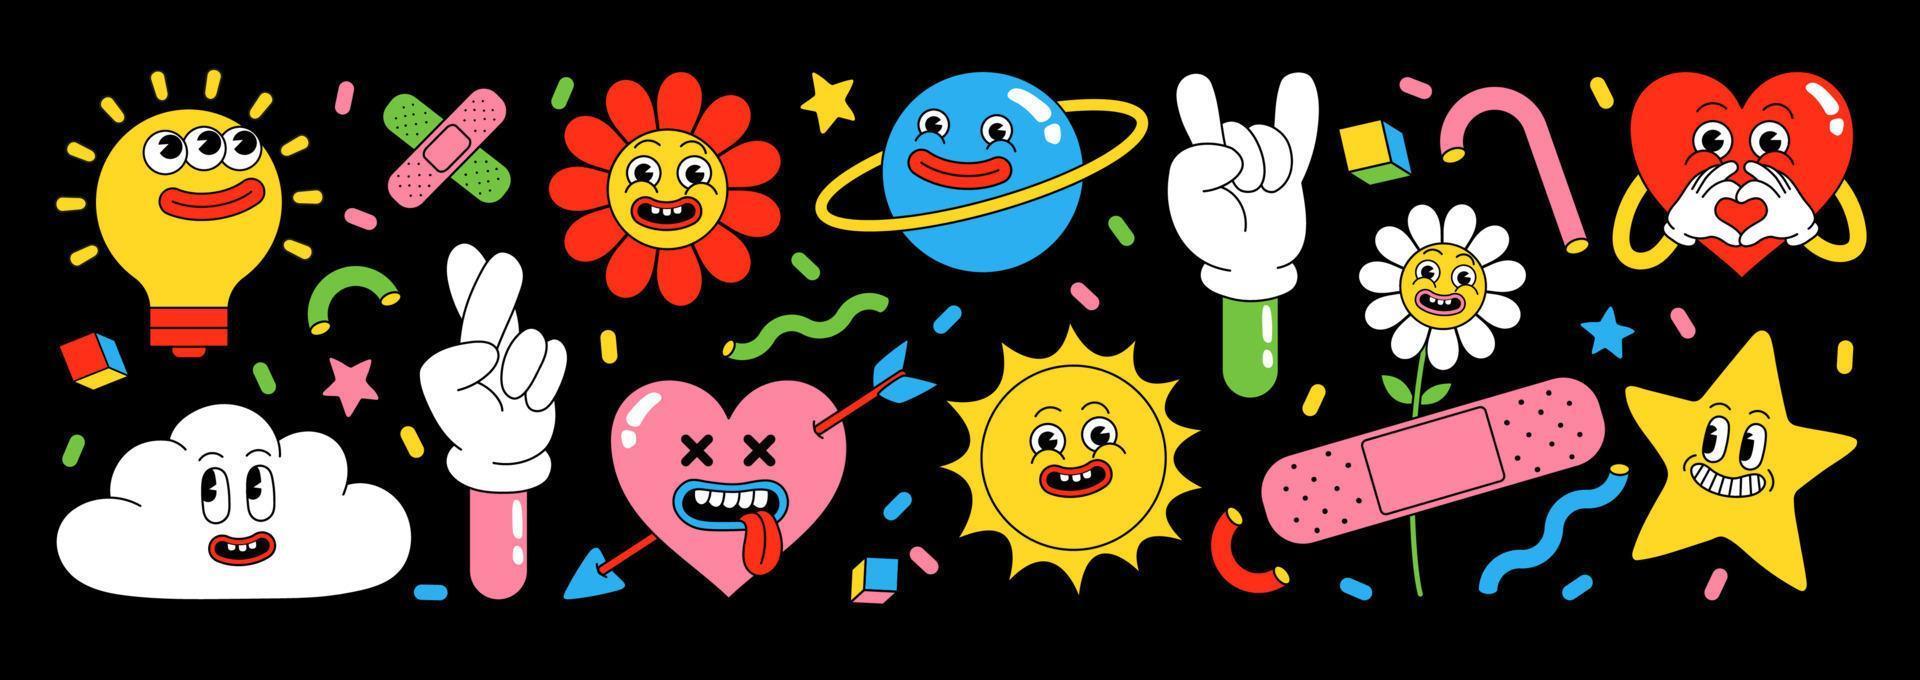 divertido paquete de pegatinas de dibujos animados. corazón, sol, planeta, baya, caras abstractas, etc. vector